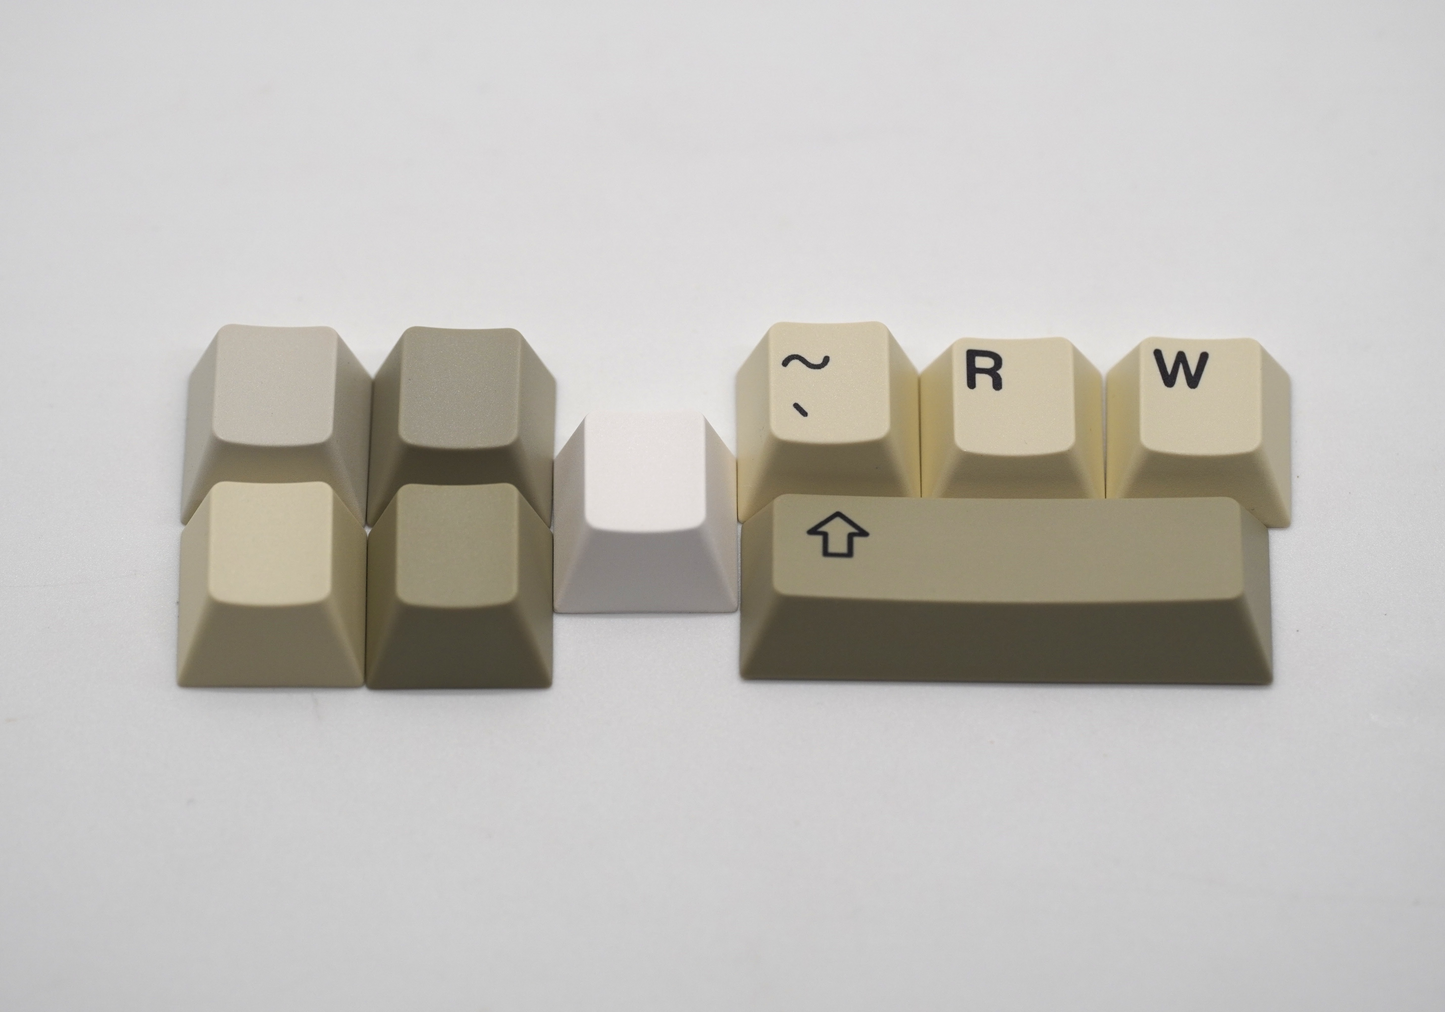 XMI Classic Keycaps